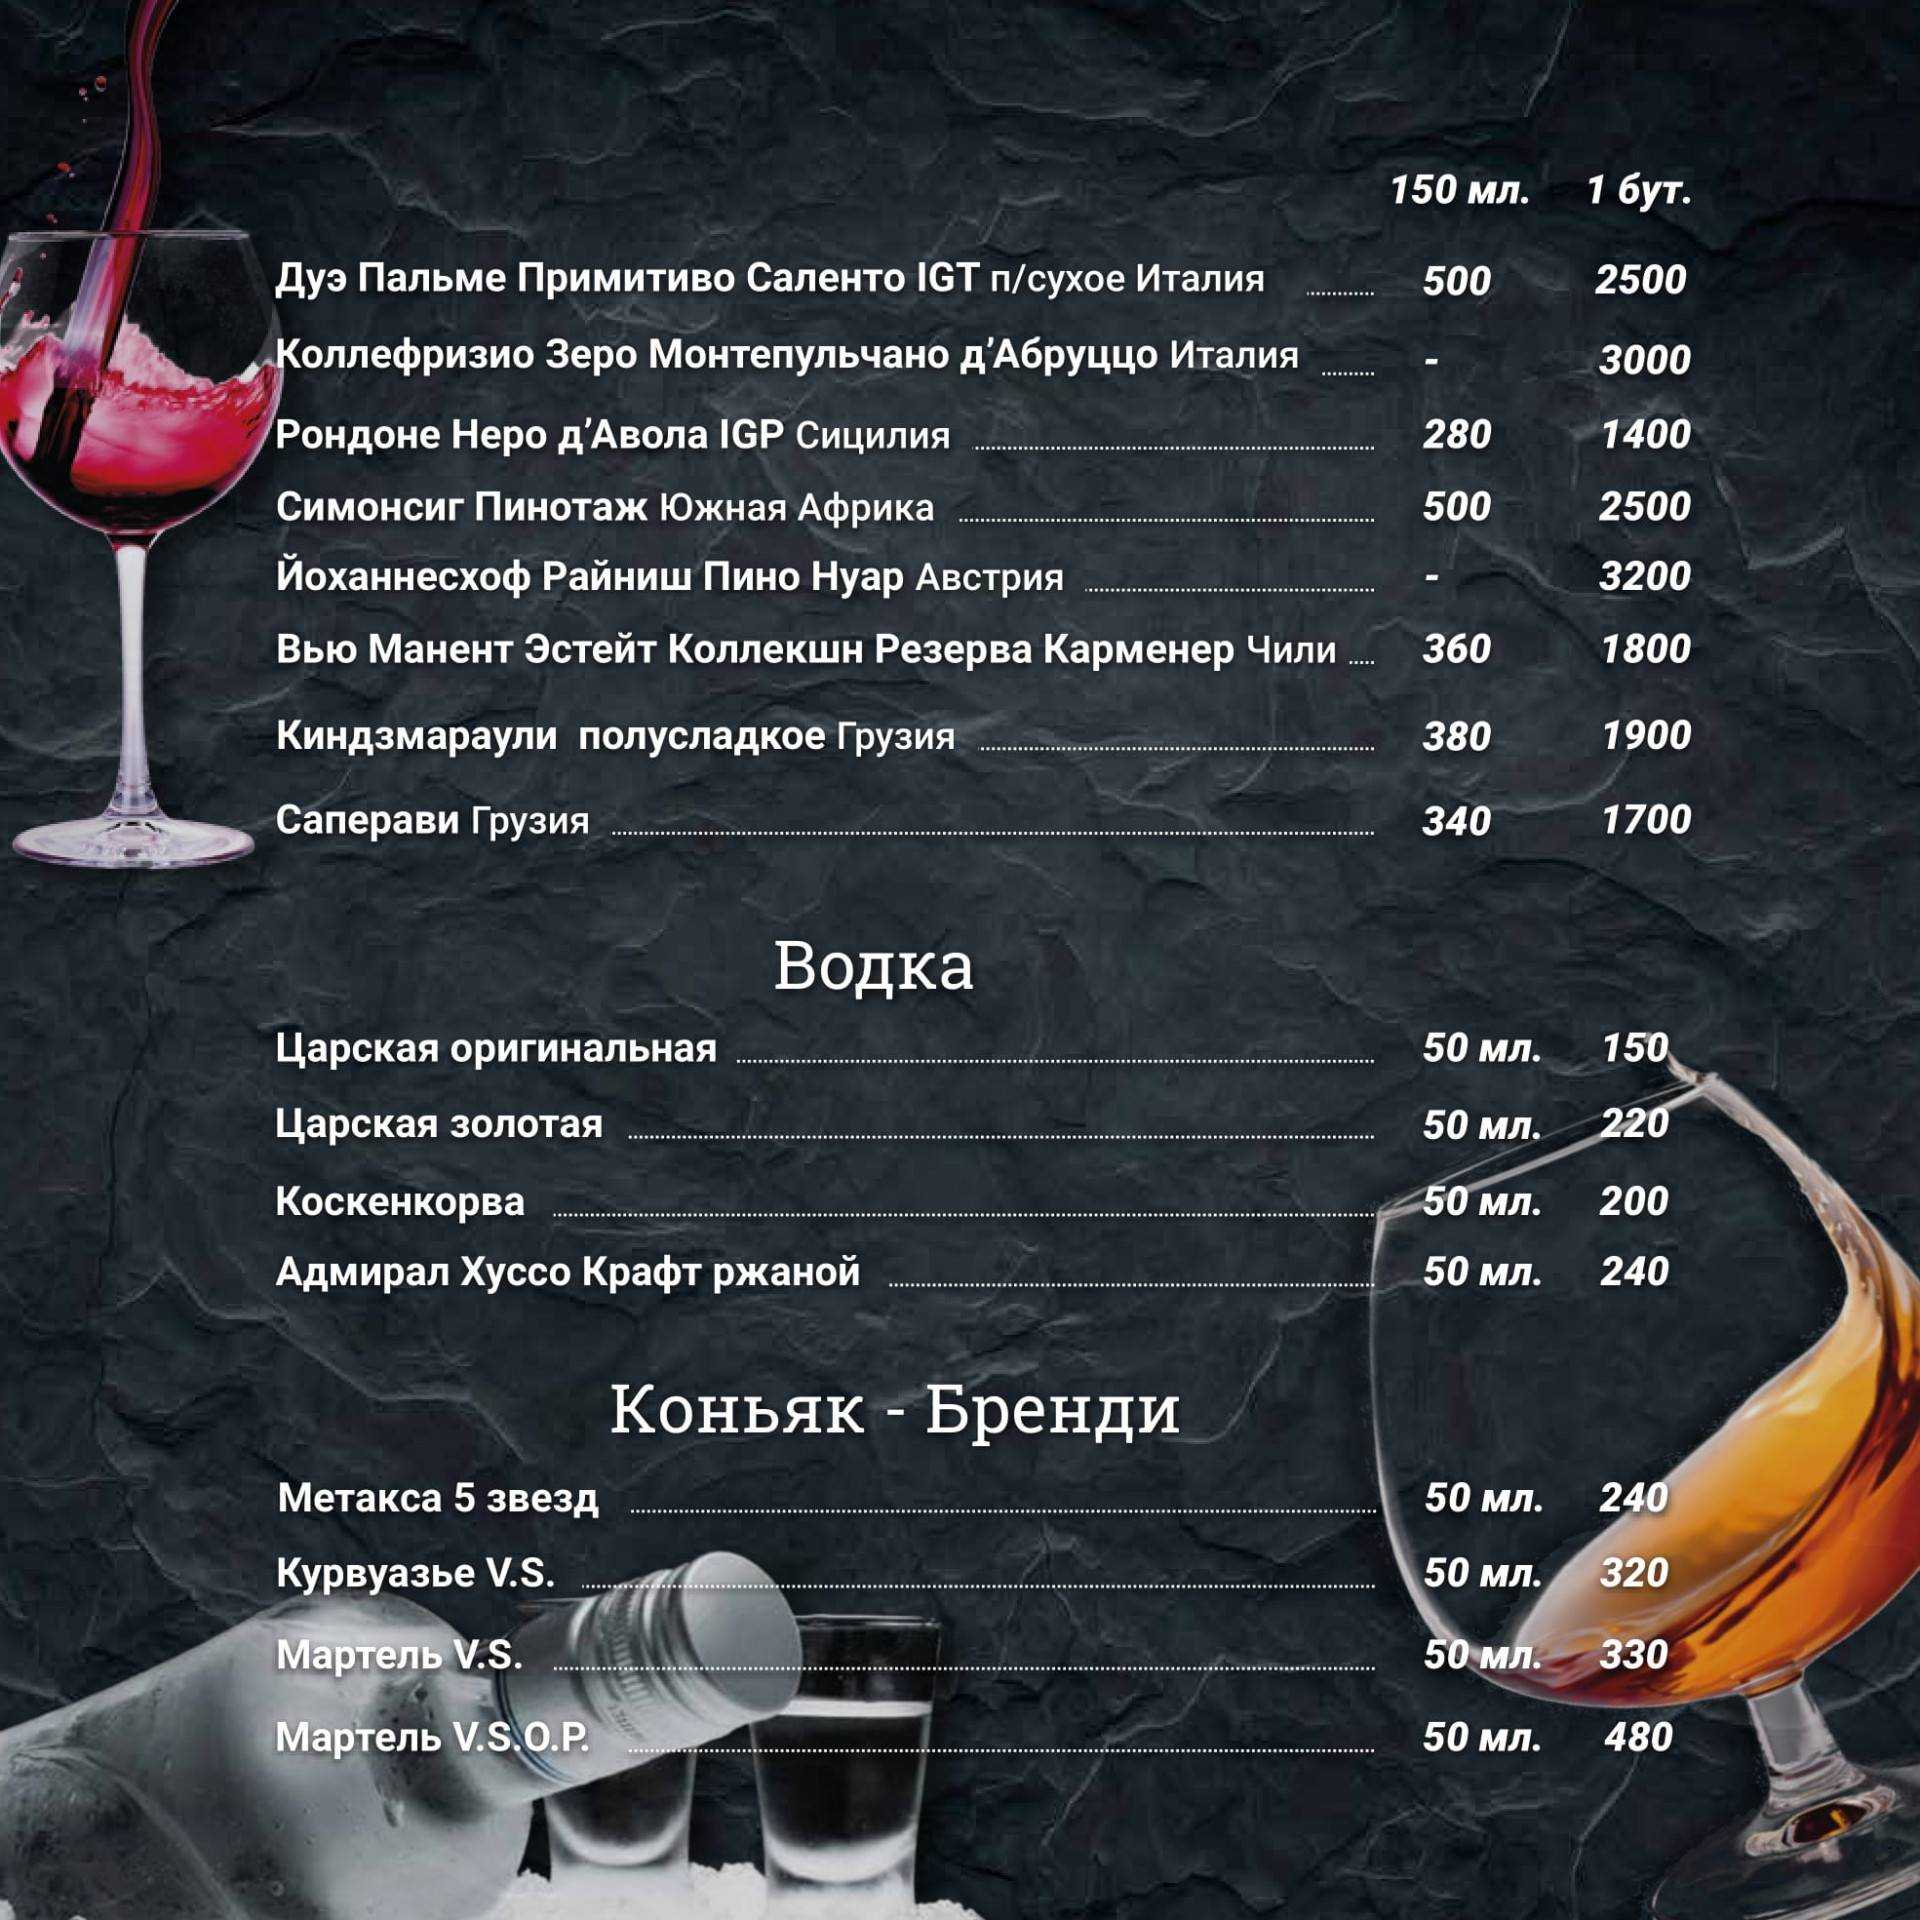 Влада лесниченко: "если уберешь в сторону винную карту, гости забудут твой ресторан"